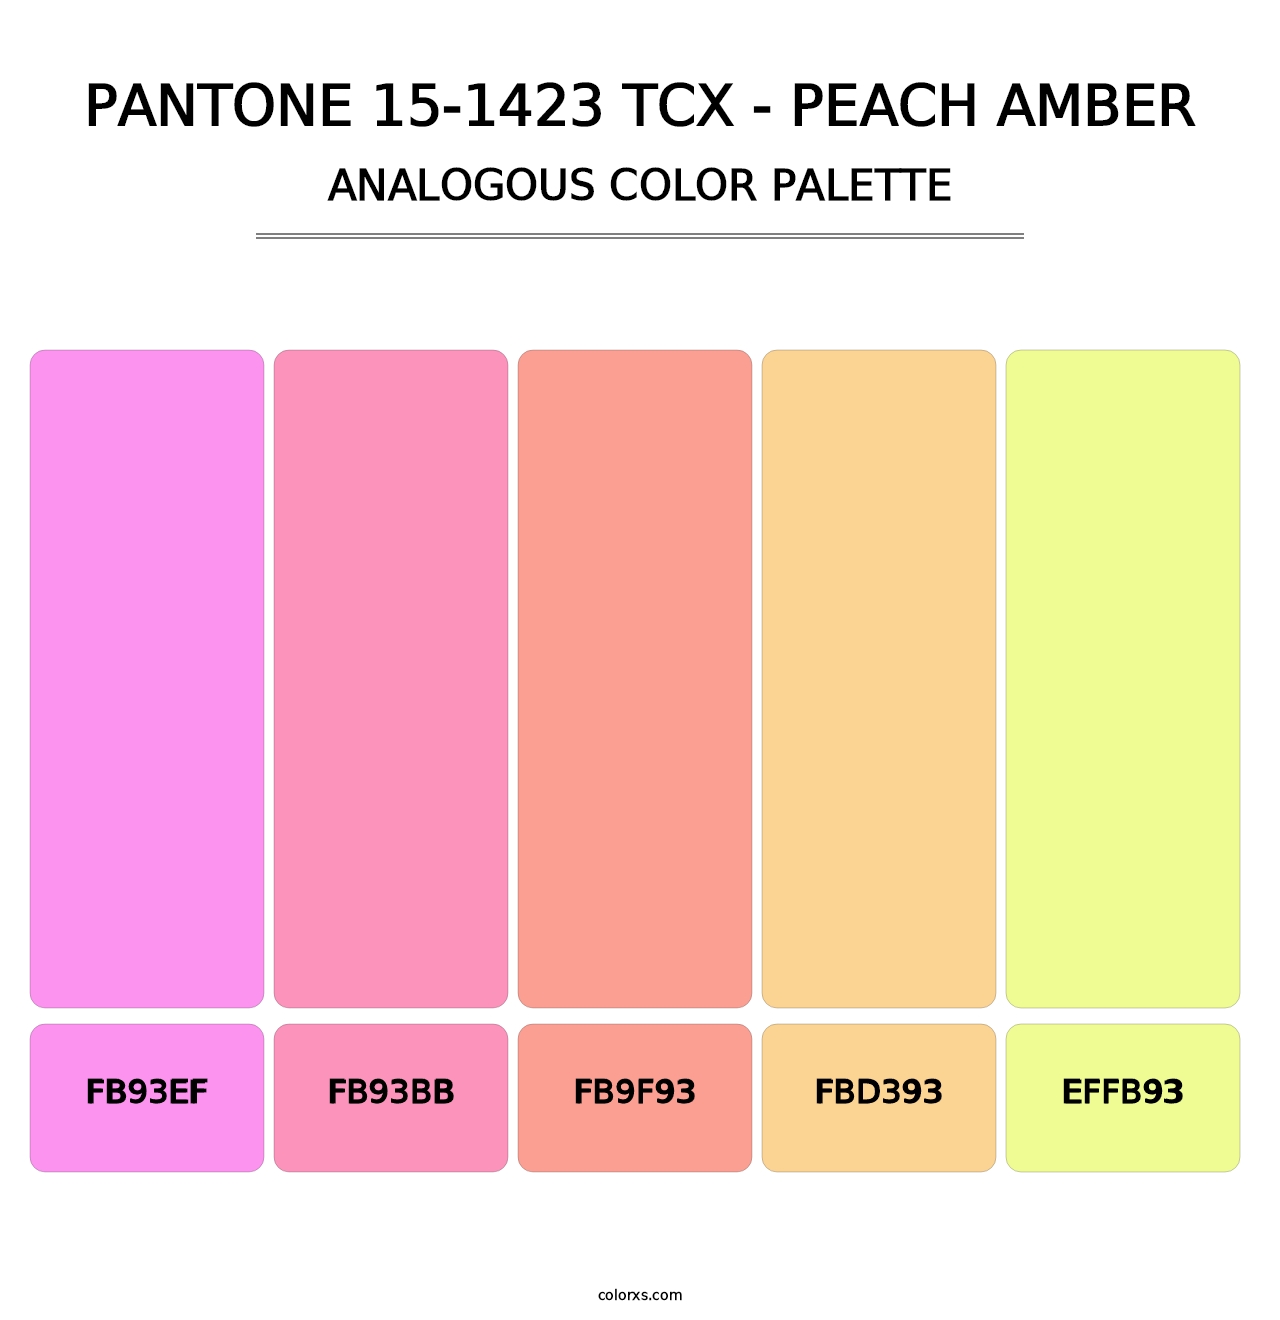 PANTONE 15-1423 TCX - Peach Amber - Analogous Color Palette